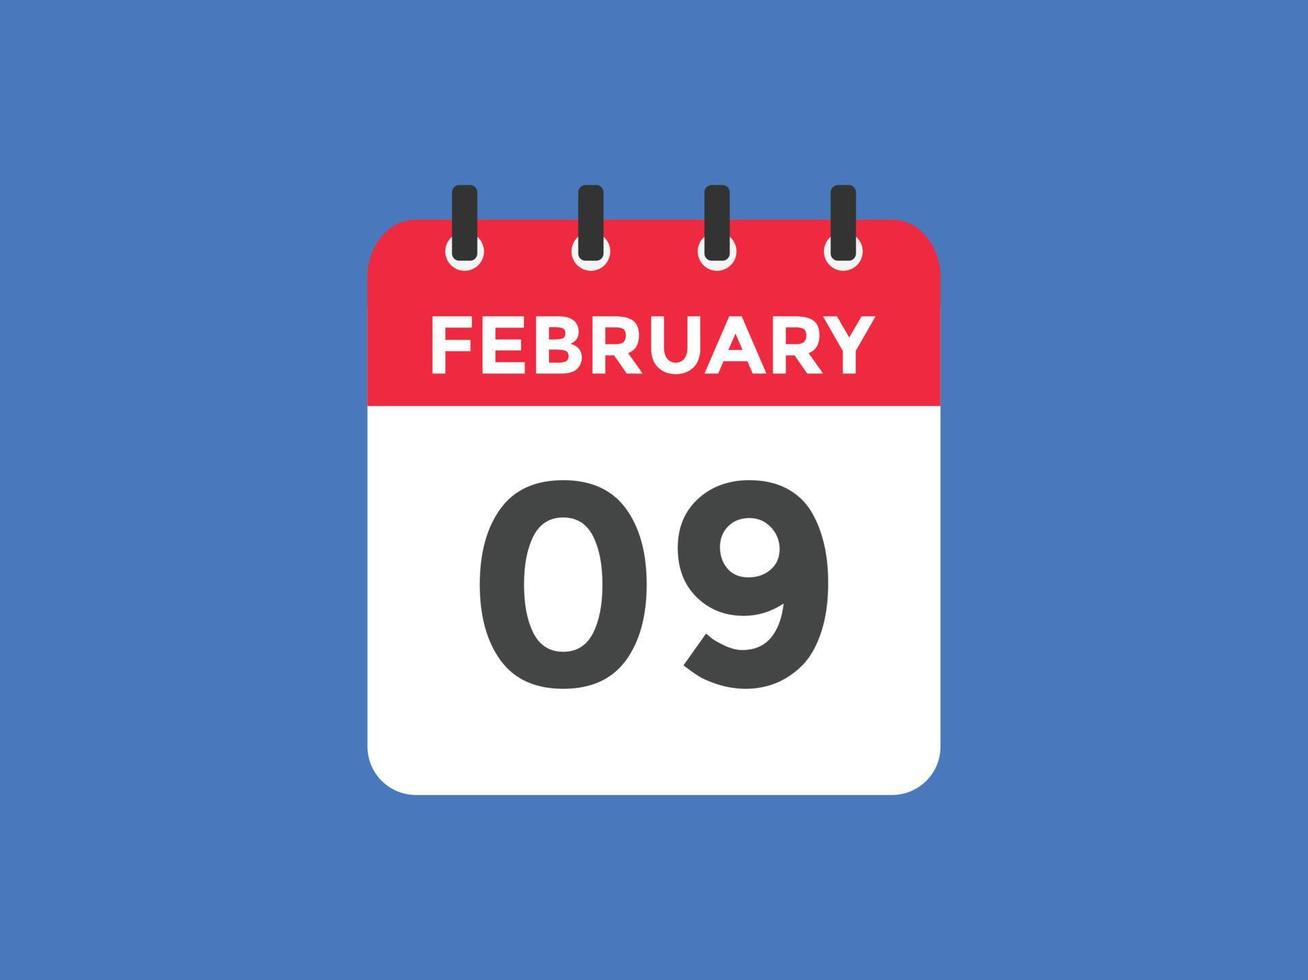 lembrete de calendário de 9 de fevereiro. 9 de fevereiro modelo de ícone de calendário diário. modelo de design de ícone de calendário 9 de fevereiro. ilustração vetorial vetor